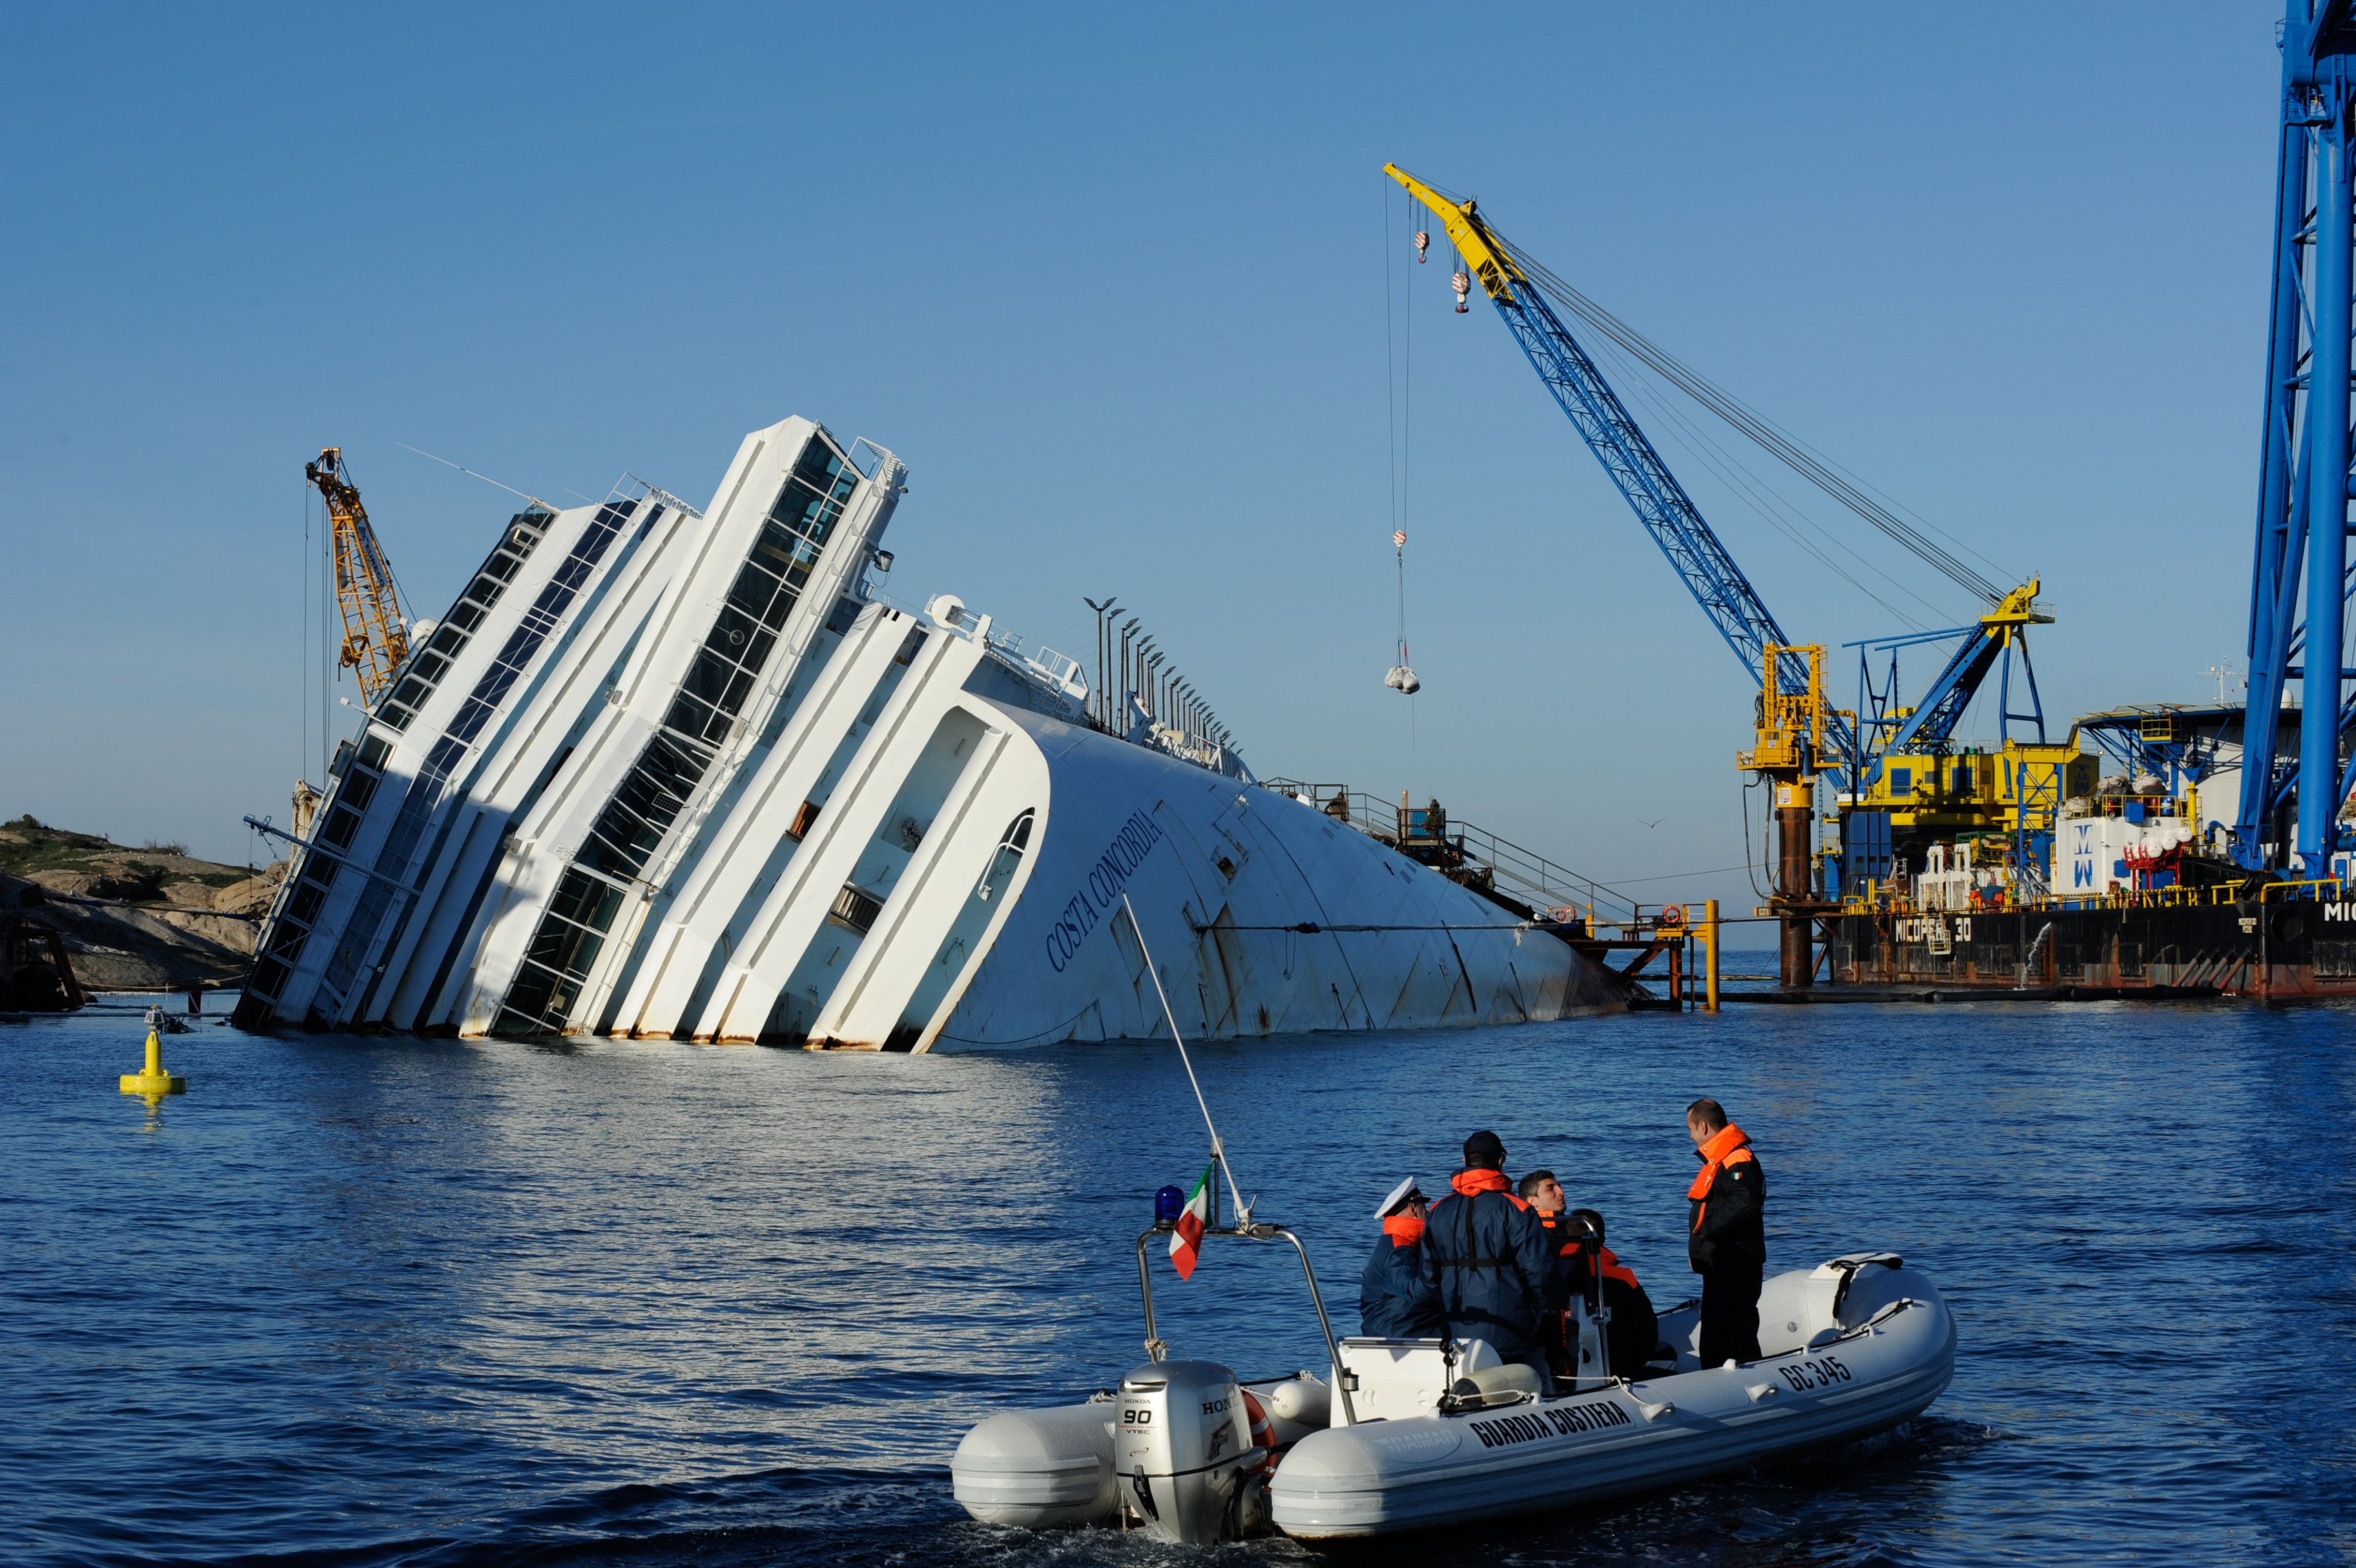 Há 10 anos, o navio Costa Concordia afundou ao largo da costa italiana, tendo resultado na morte de 32 pessoas -- 27 passageiros, cinco membros da tripulação e um elemento da equipa de socorro